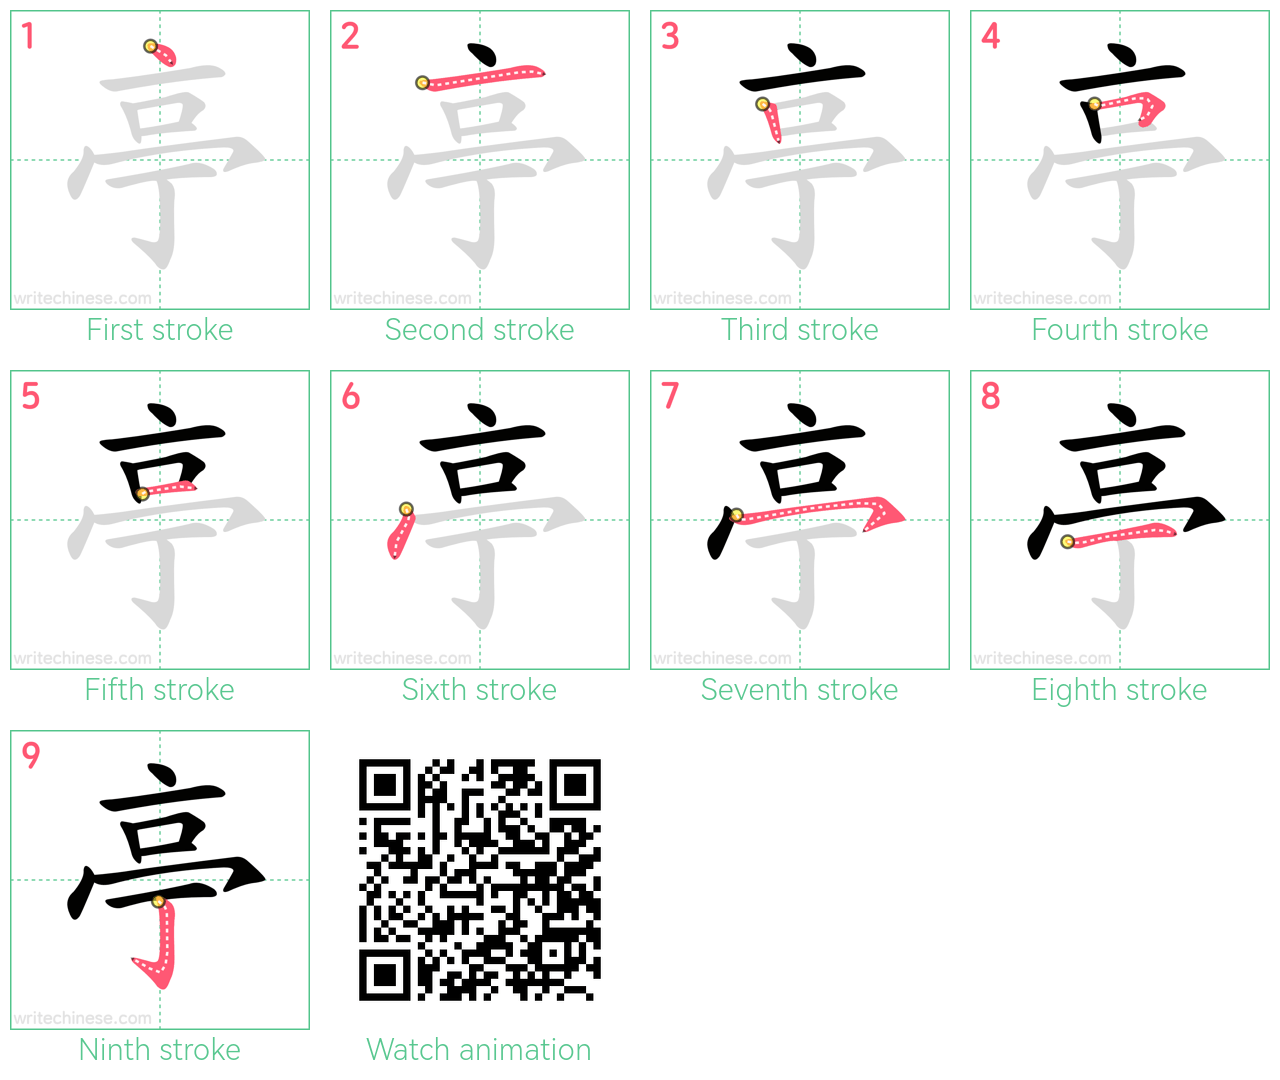 亭 step-by-step stroke order diagrams